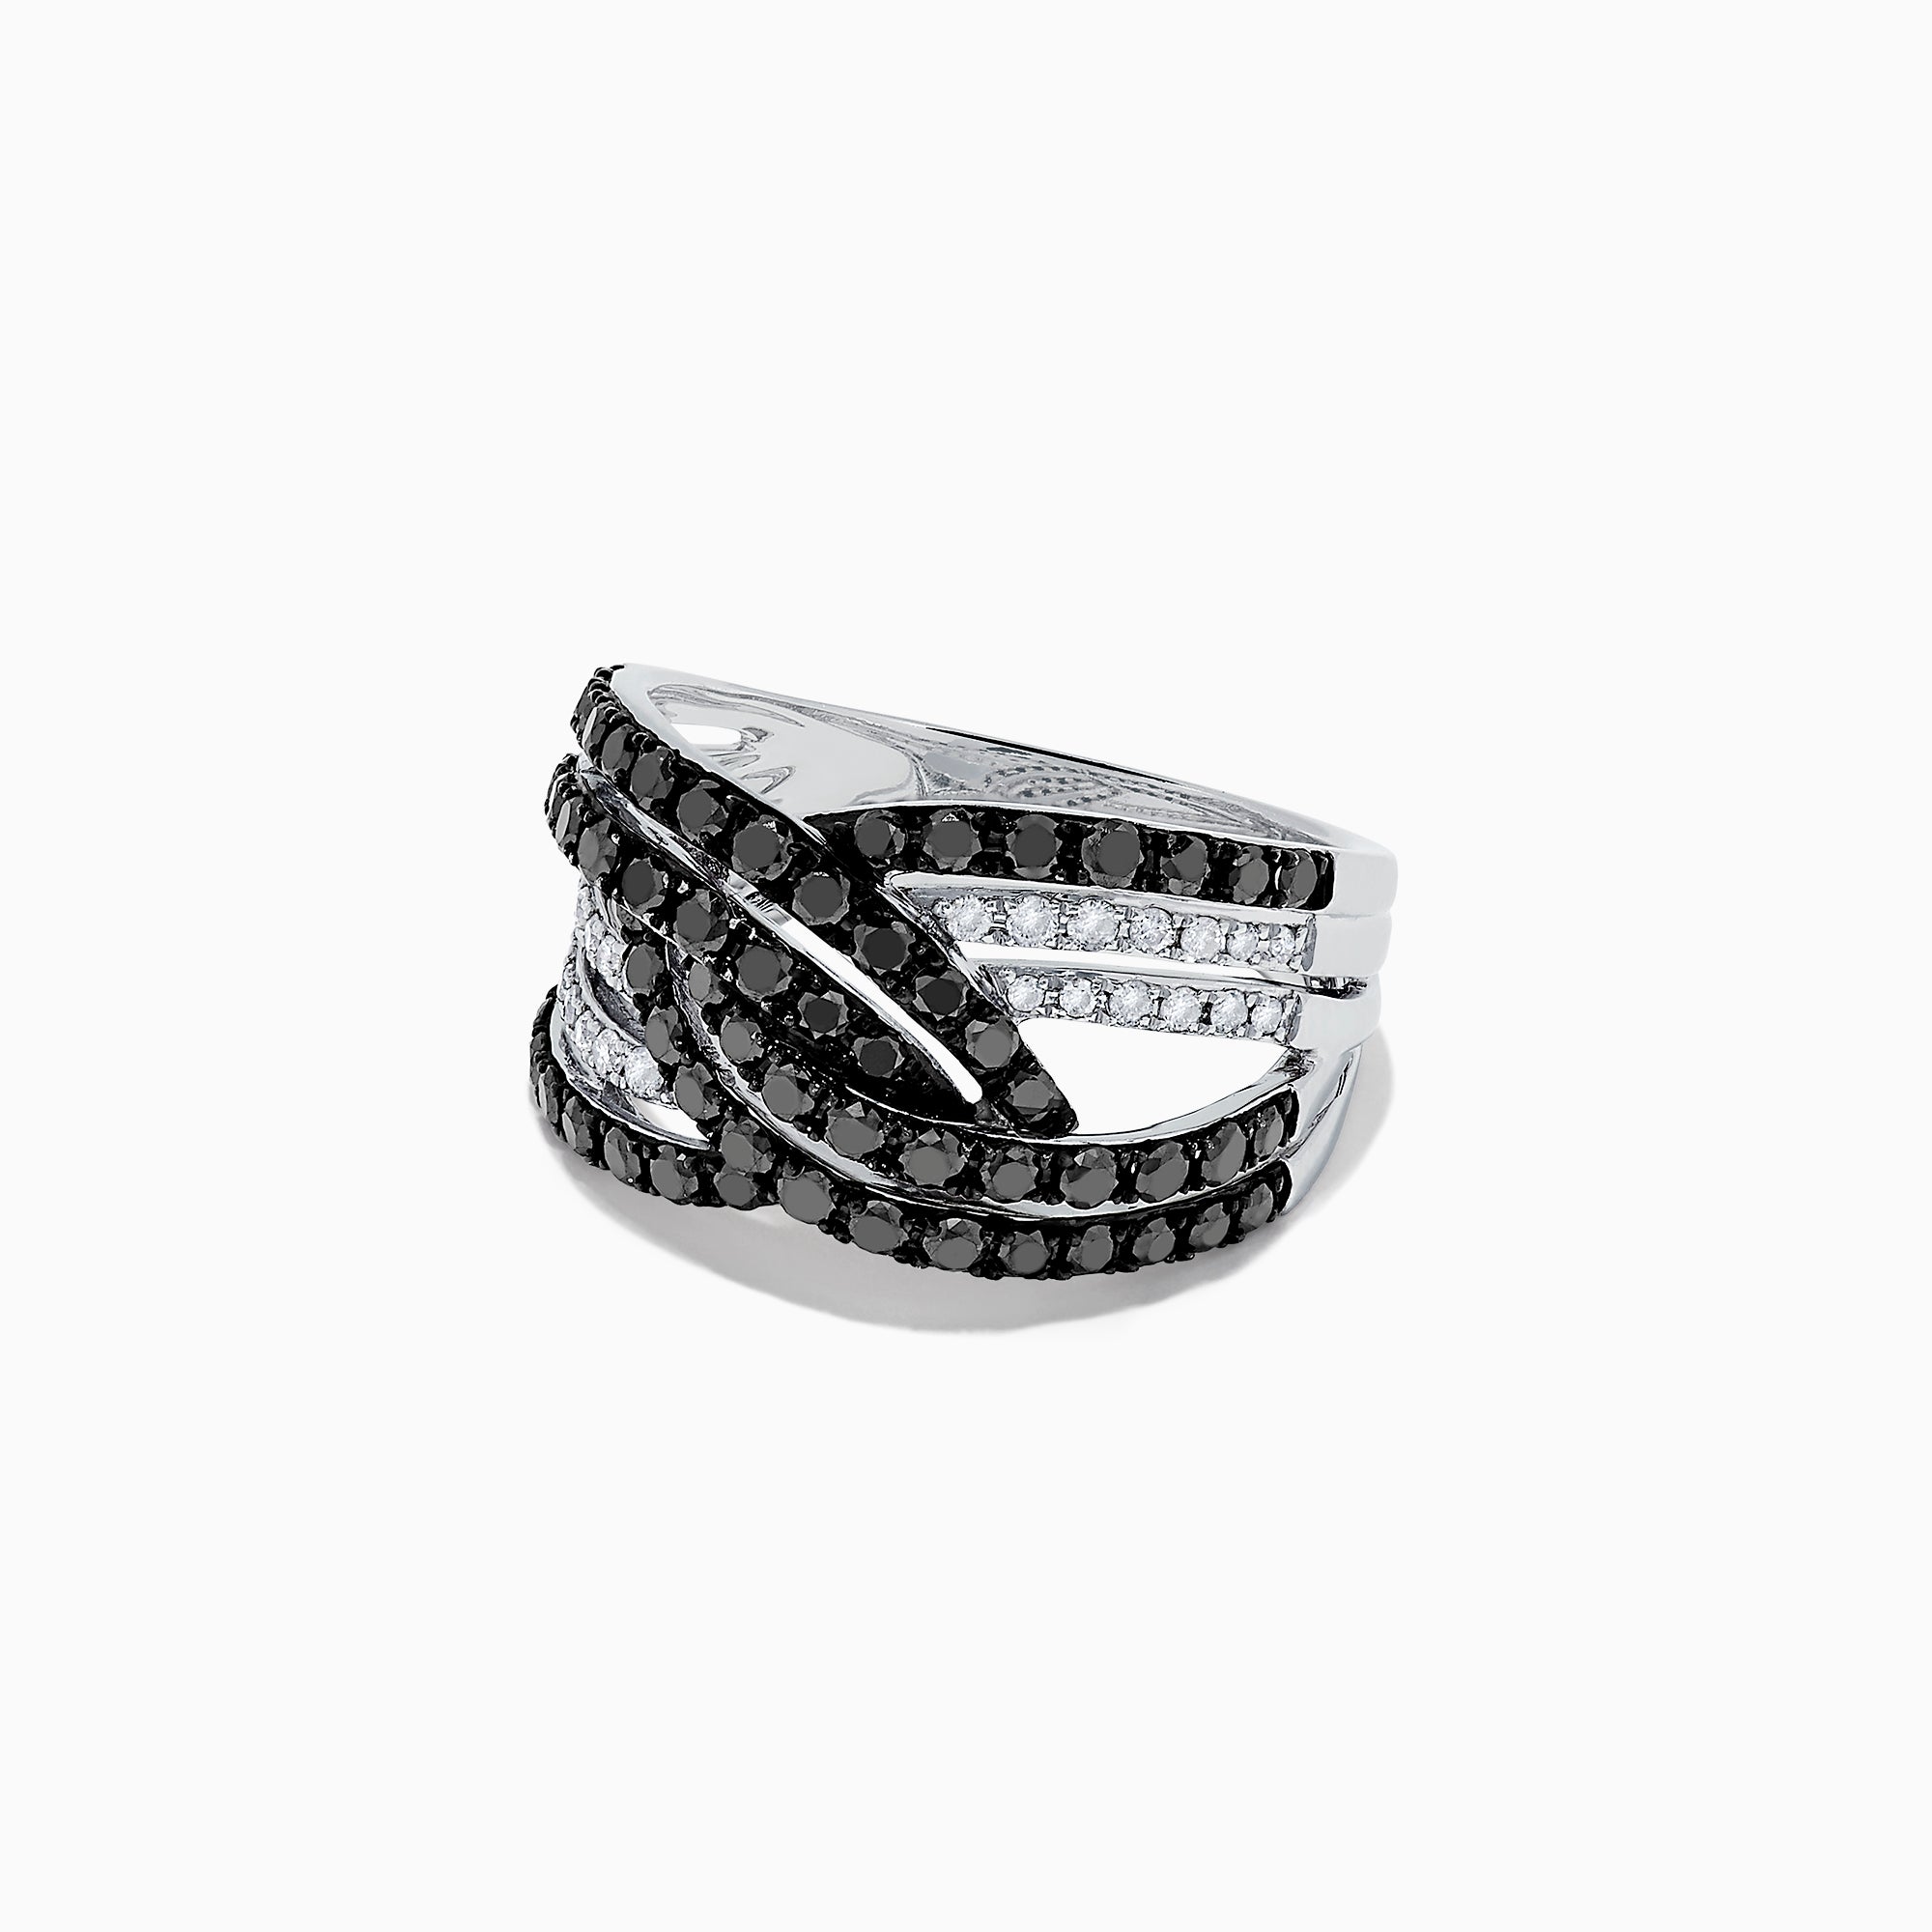 Effy 14K White Gold Black and White Diamond Ring, 1.18 TCW